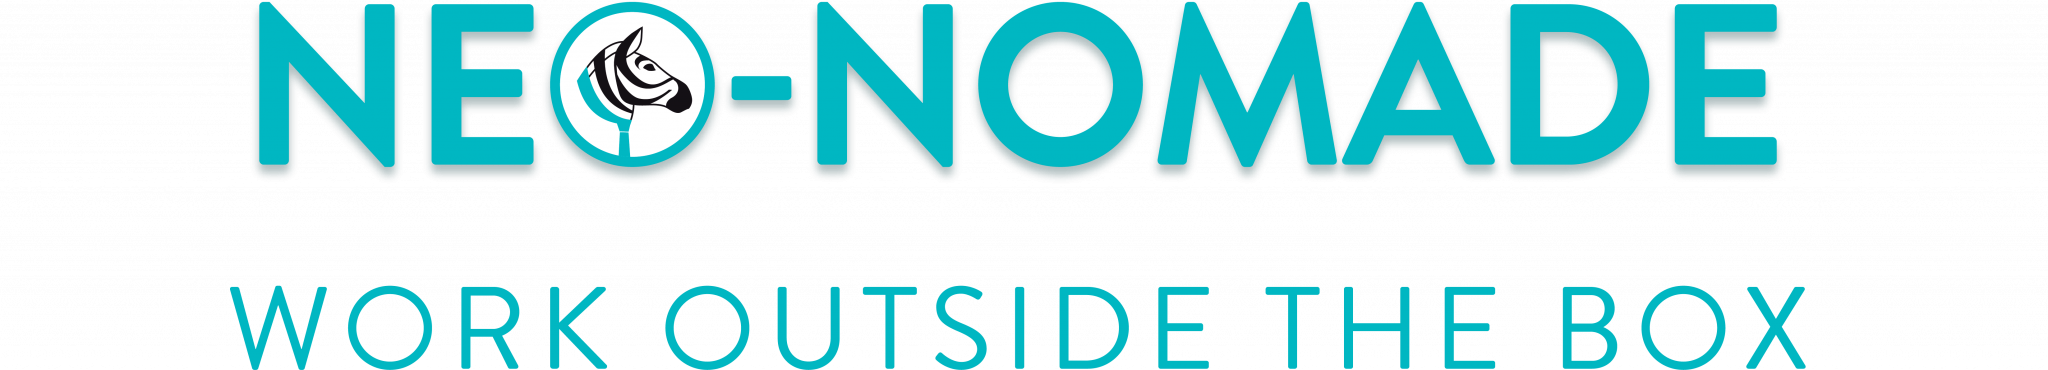 Logo Neo-nomade